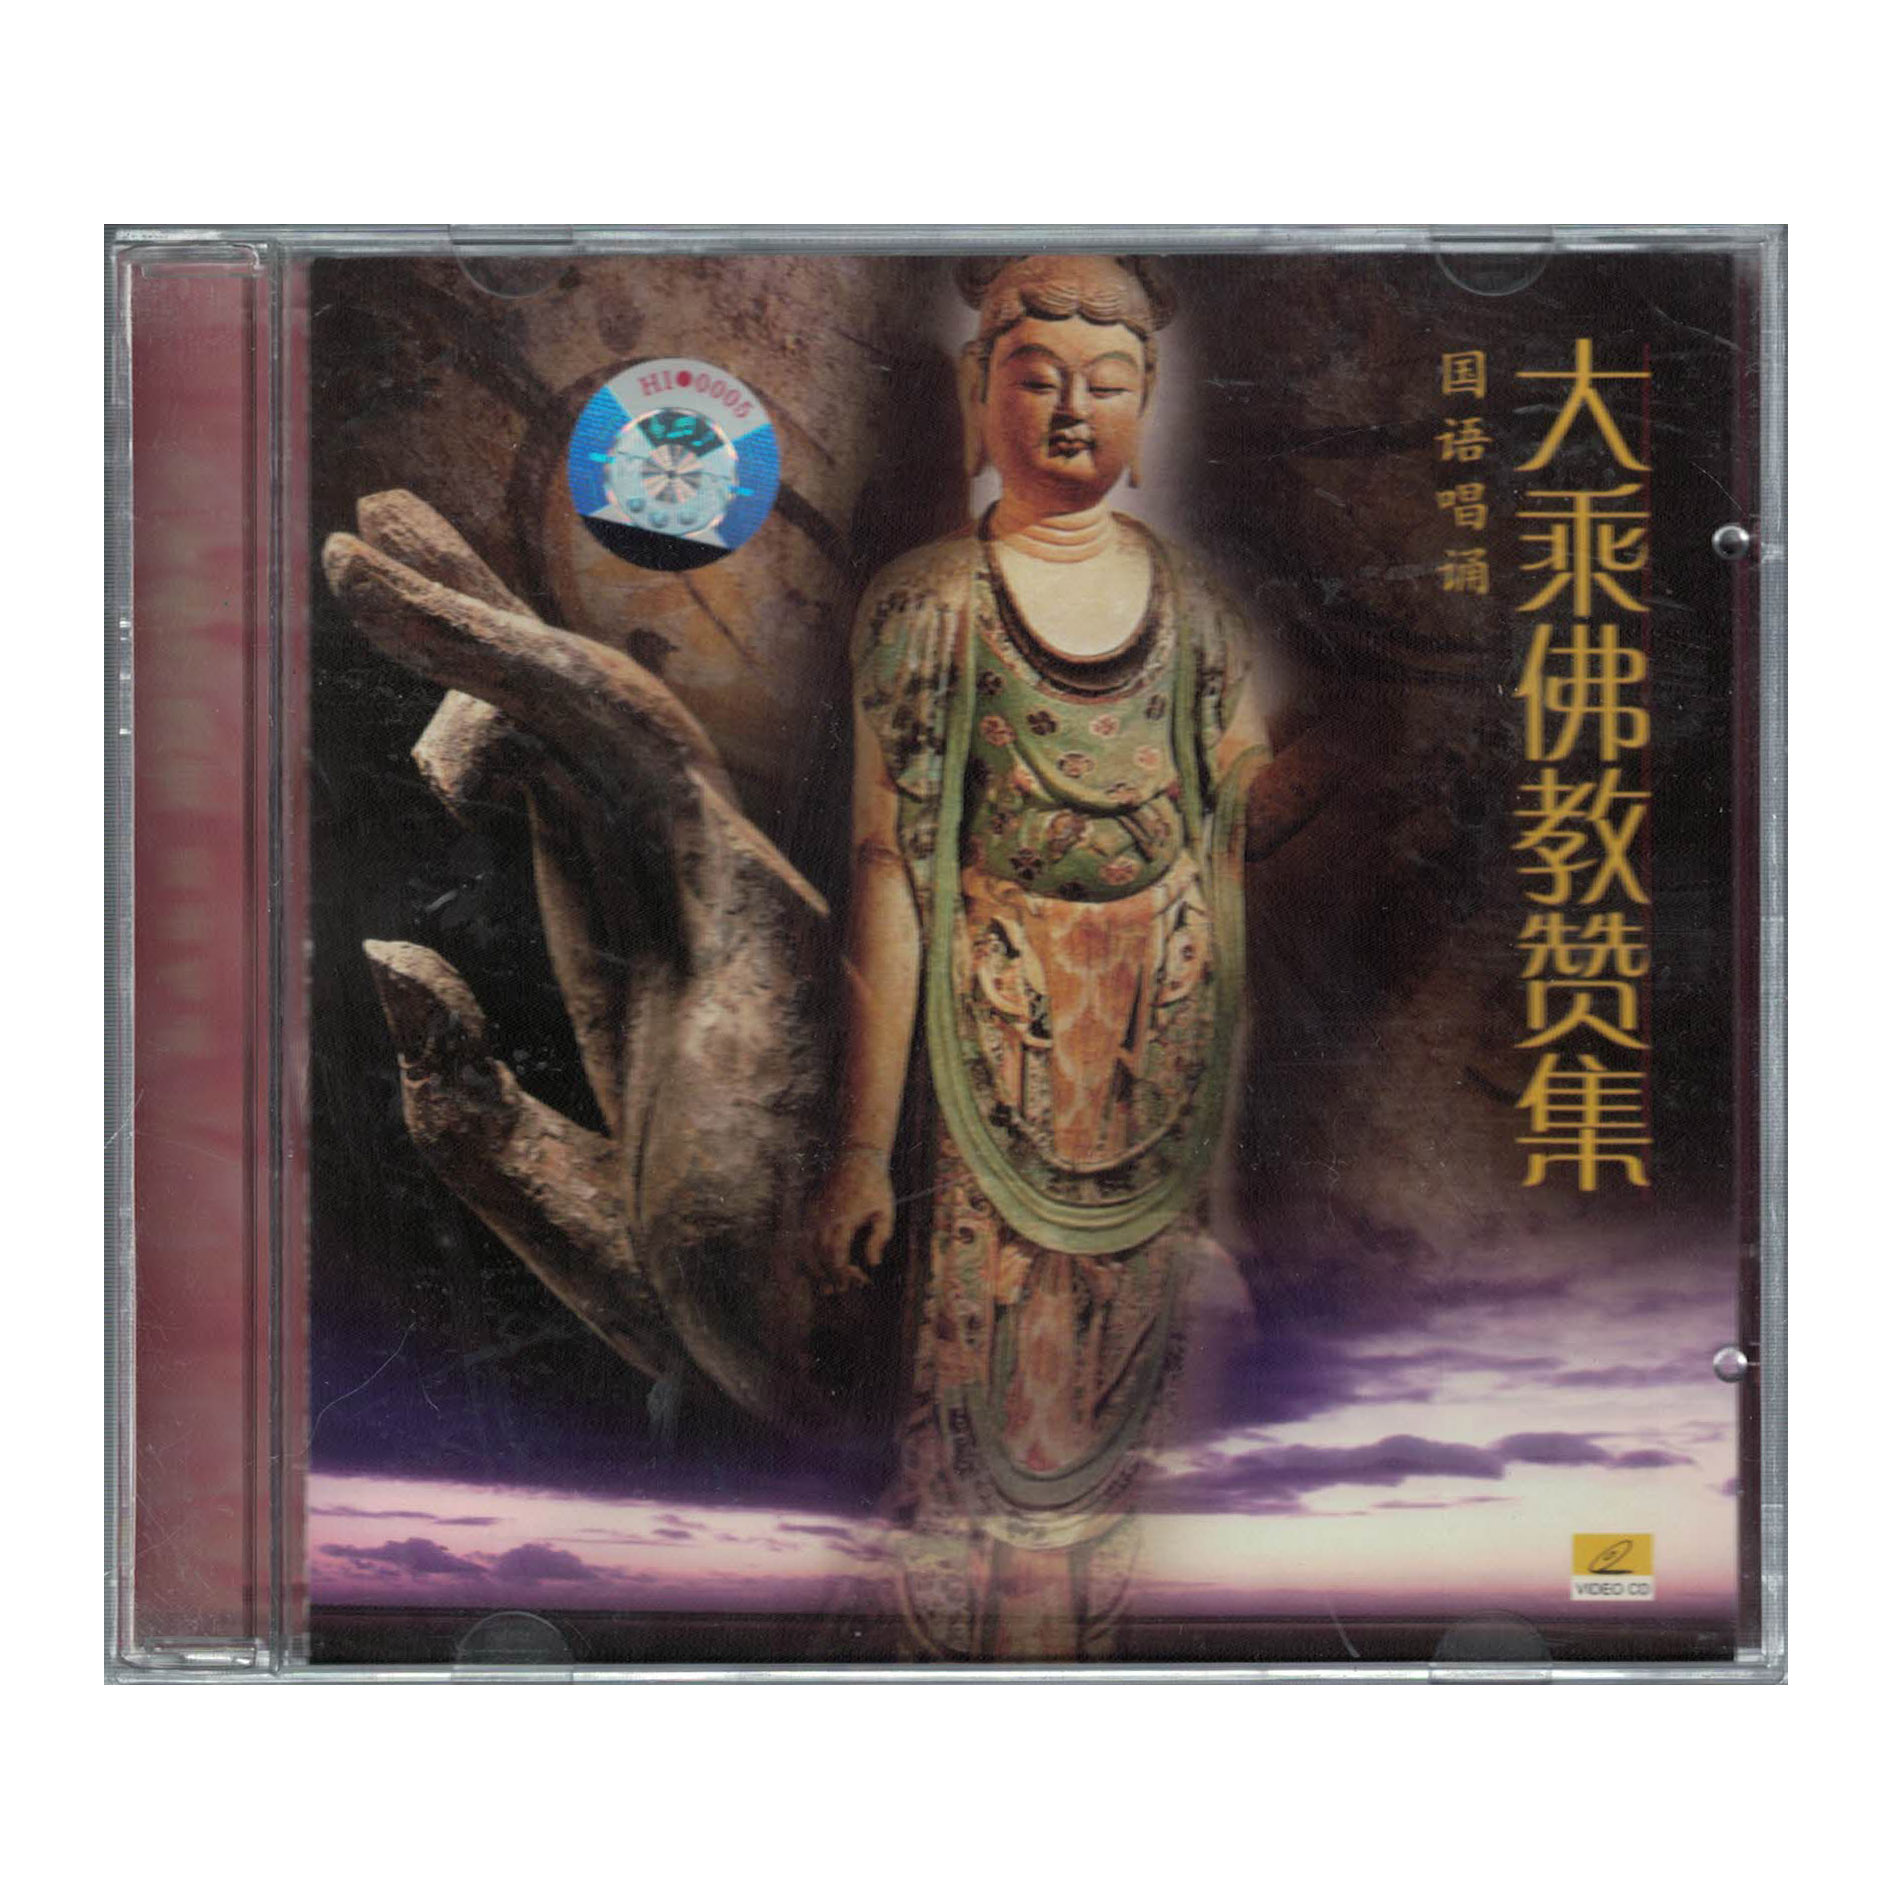 大乘佛教赞集 国语唱诵vcd视频光碟大弥陀赞经典佛教经文音乐唱片